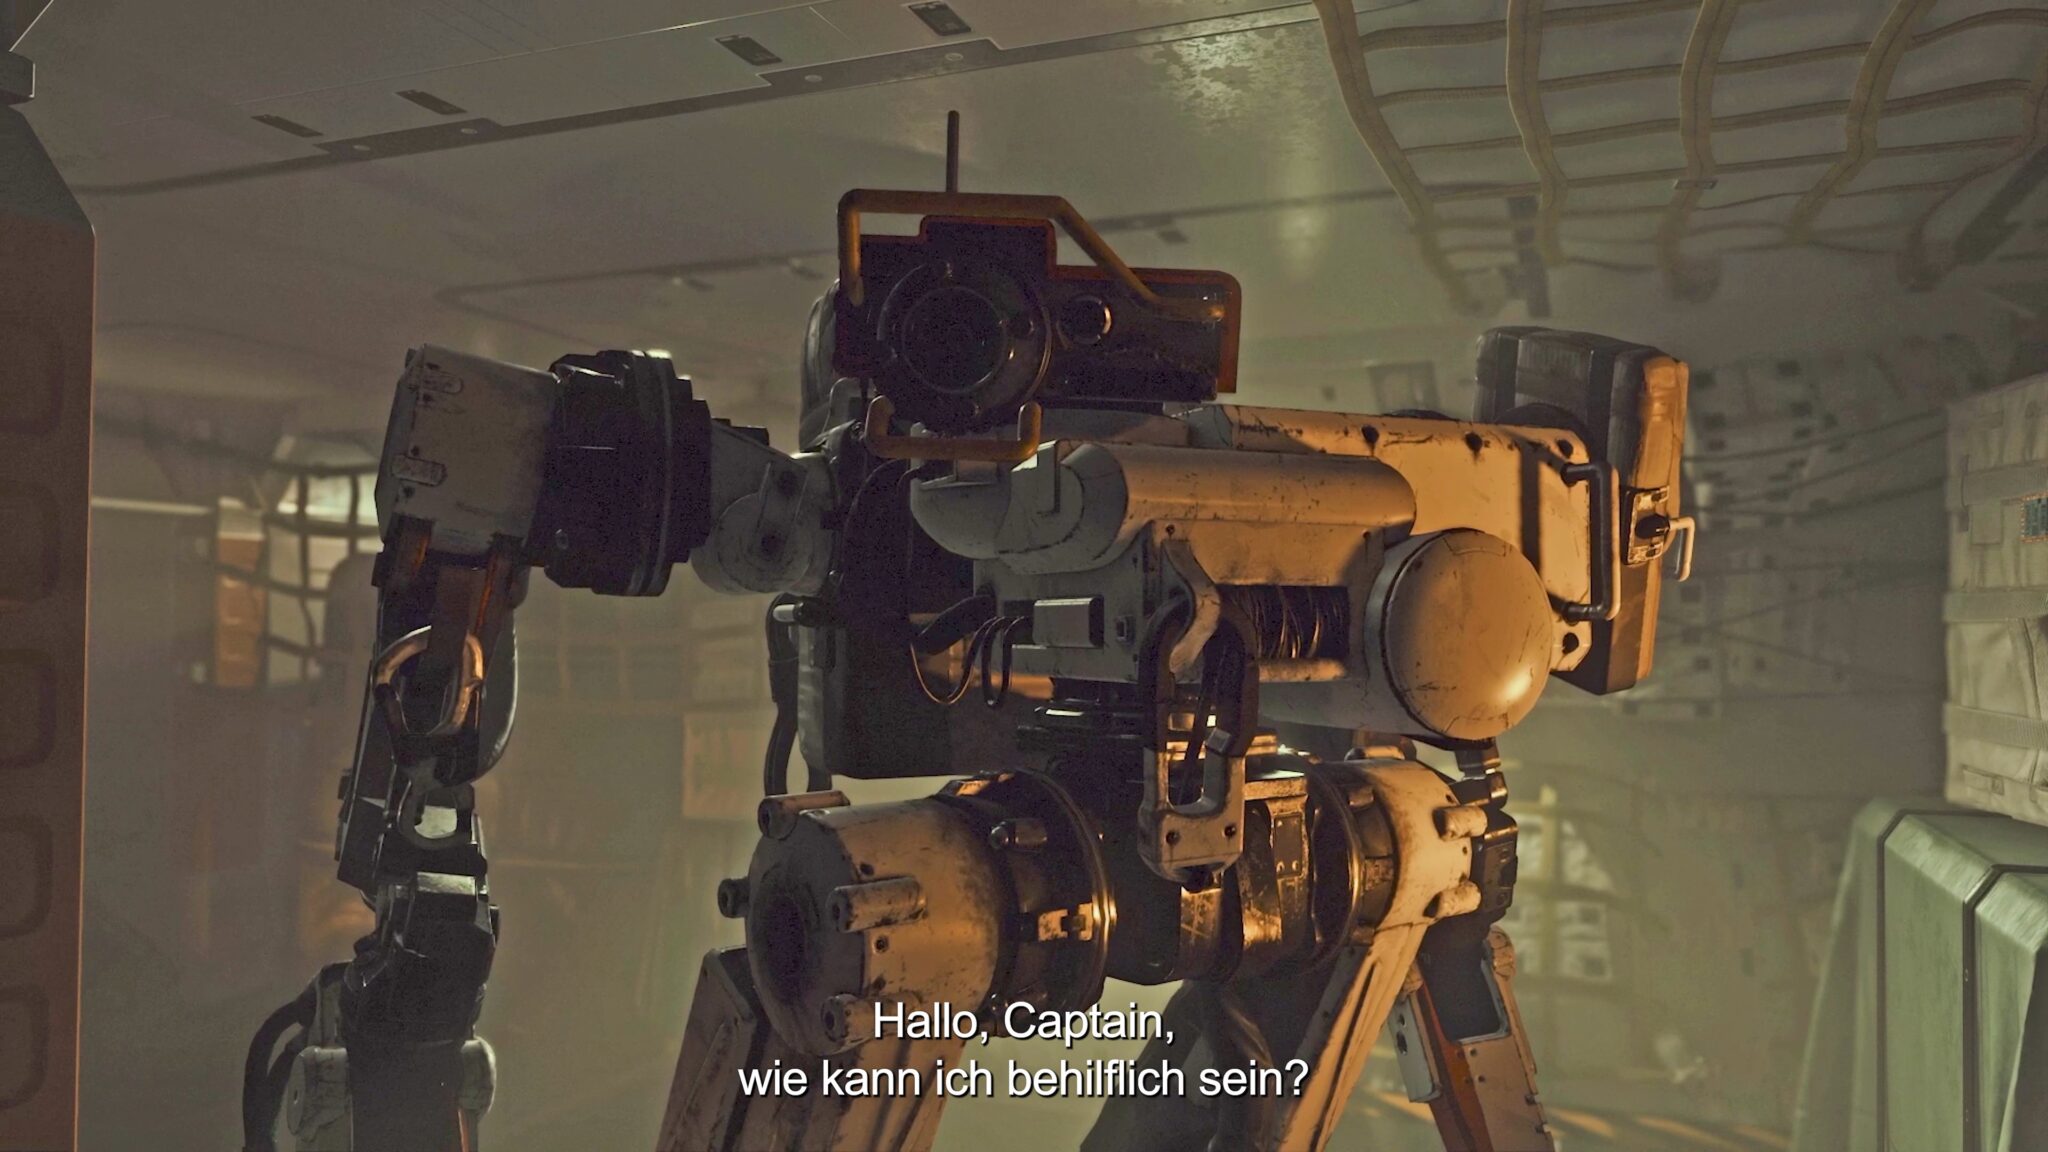 Il robot è uno dei tuoi possibili compagni a Starfield.